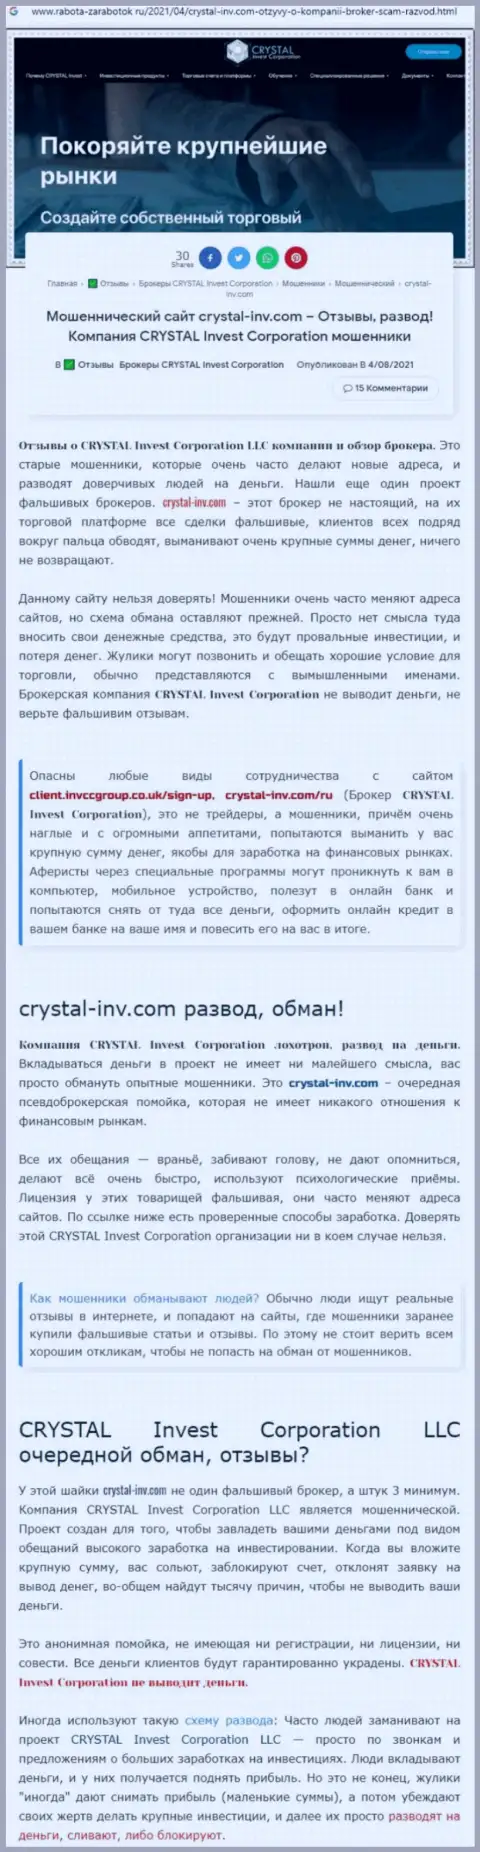 Материал, выводящий на чистую воду организацию Crystal Invest Corporation, взятый с web-портала с обзорами мошеннических комбинаций разных контор